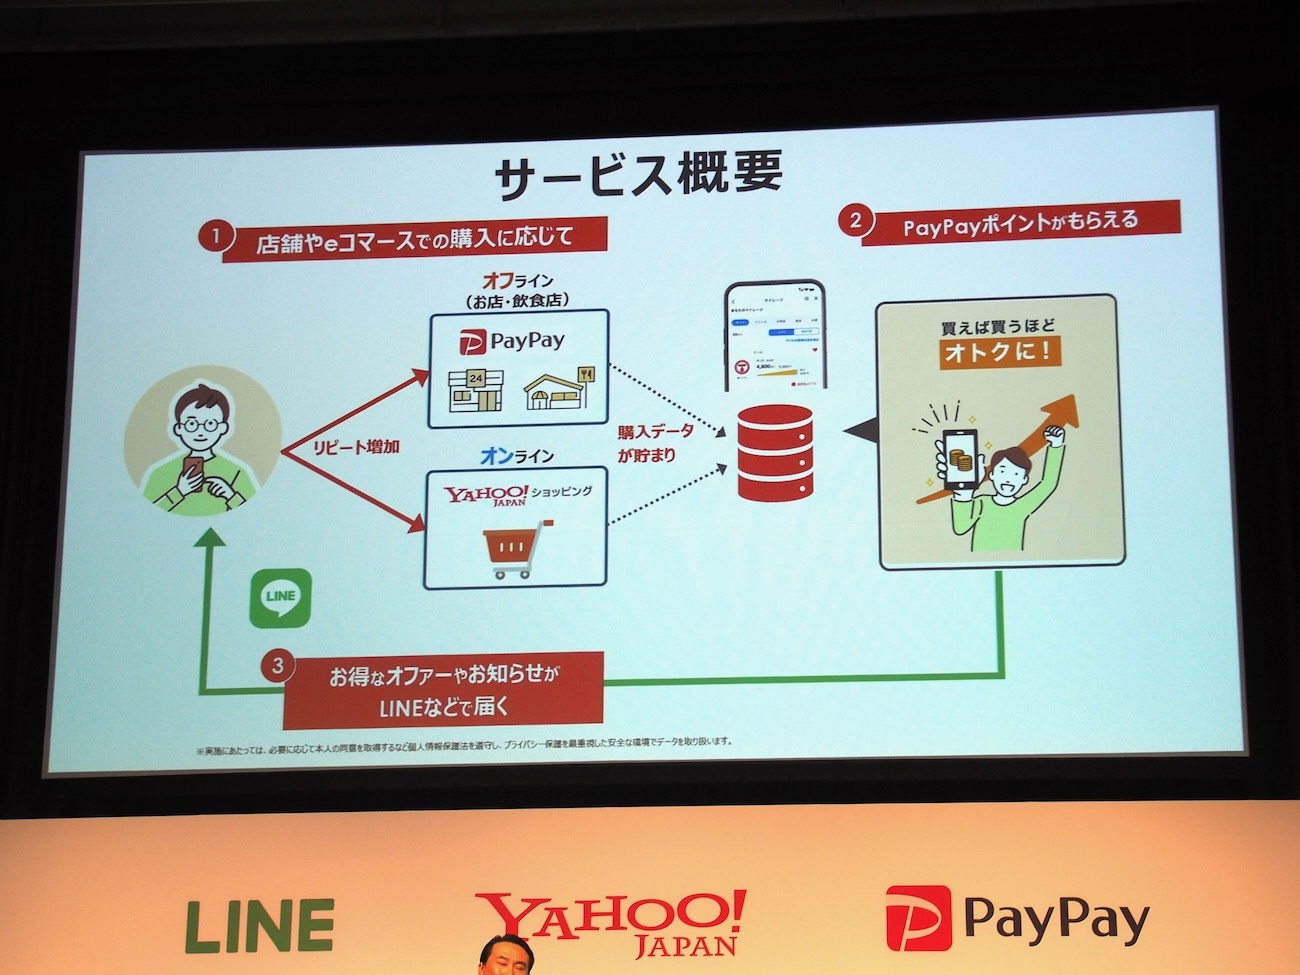 「LINE・Yahoo! JAPAN・PayPay マイレージ」の概要。メーカー指定の商品をオンライン・オフラインで購入してマイレージが貯まるとPayPayポイントなどがもらえるほか、LINEでお得なクーポンなどももらえるようになるとのこと